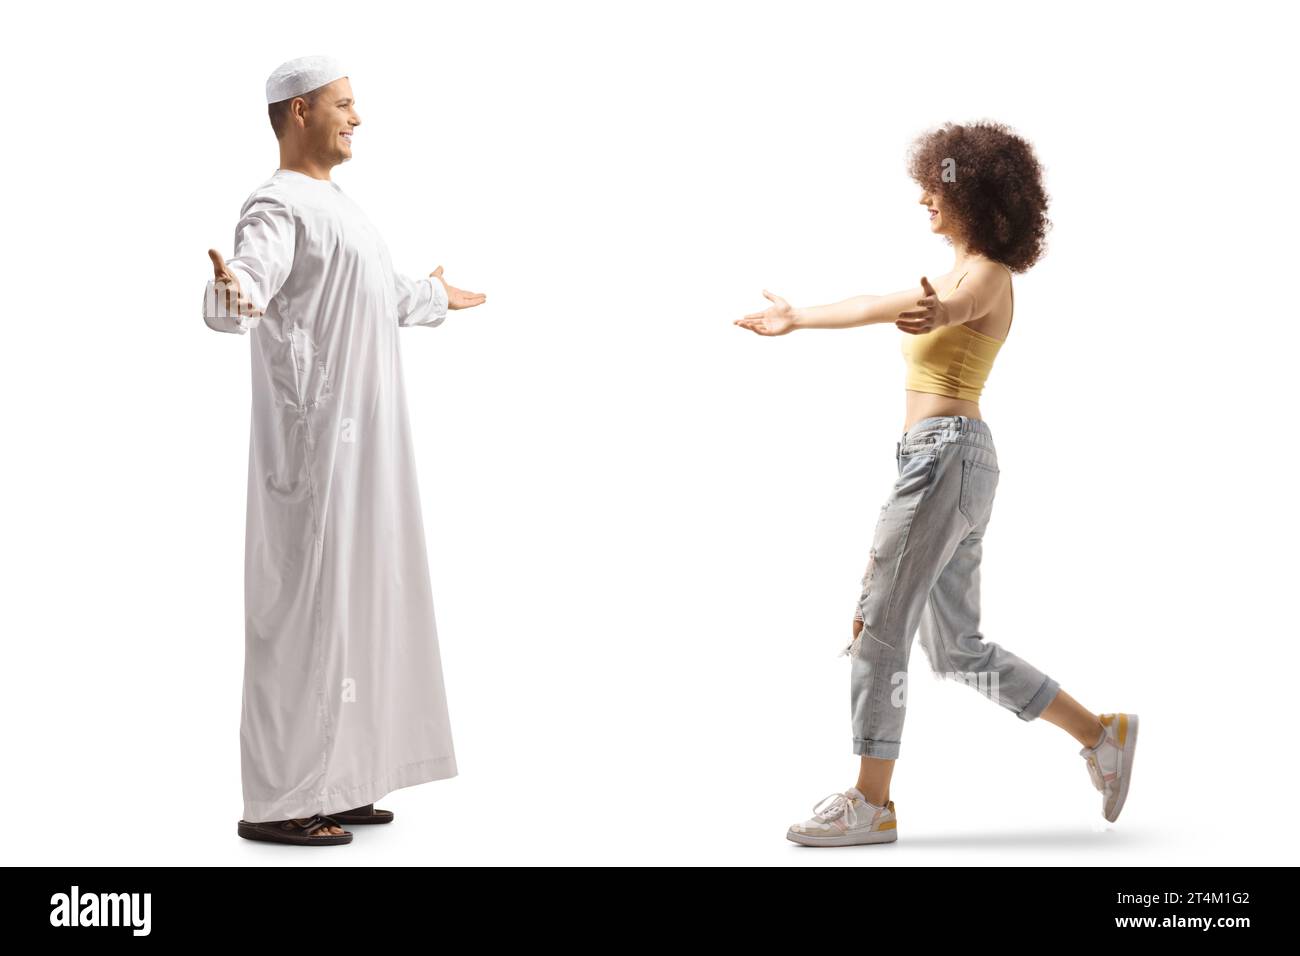 Ein muslimischer Mann trifft eine junge Frau aus einer anderen ethnischen Herkunft, isoliert auf weißem Hintergrund Stockfoto